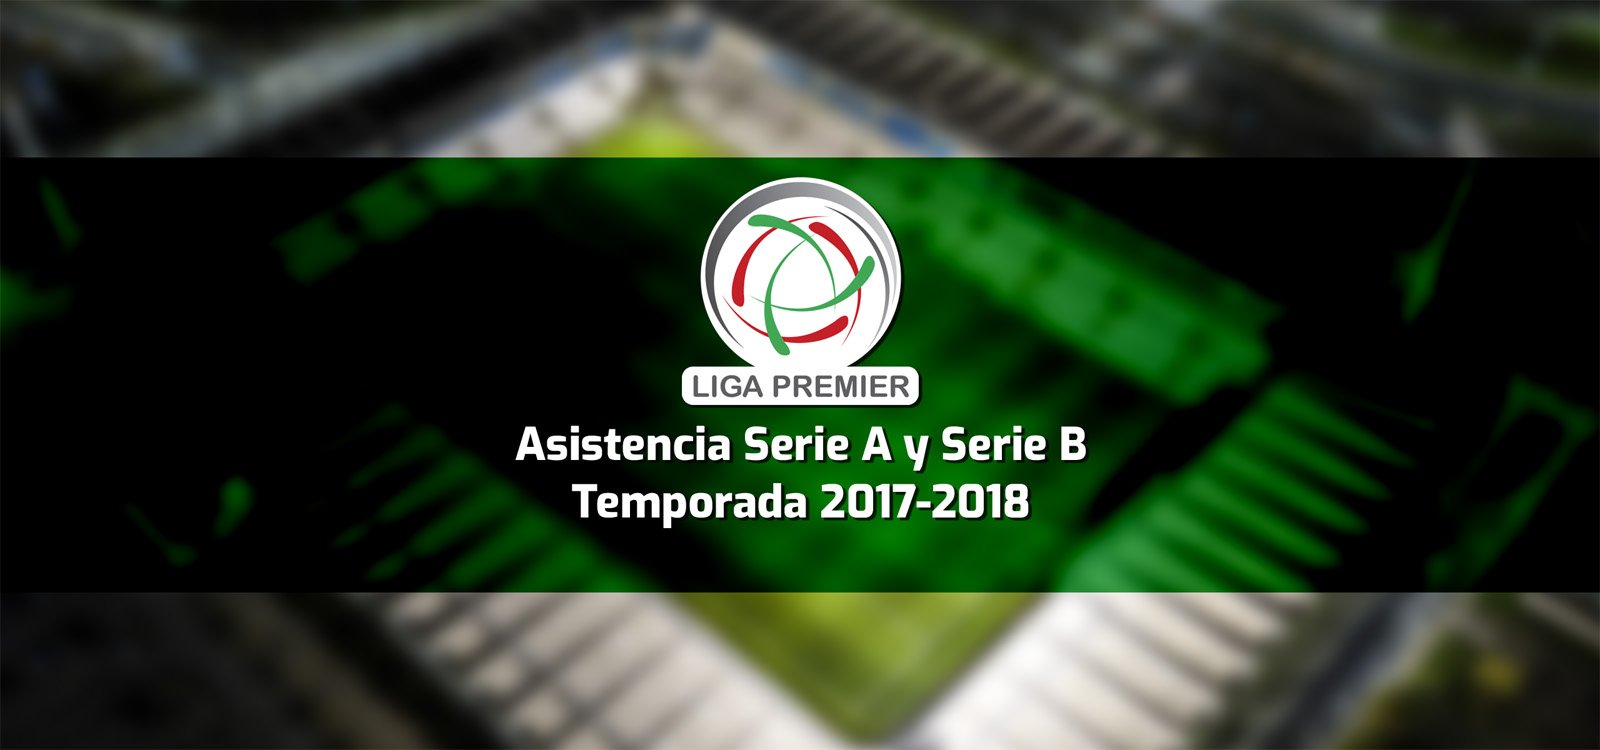 Asistencia de la Liga Premier, Serie A y Serie B - Temporada 2017-2018